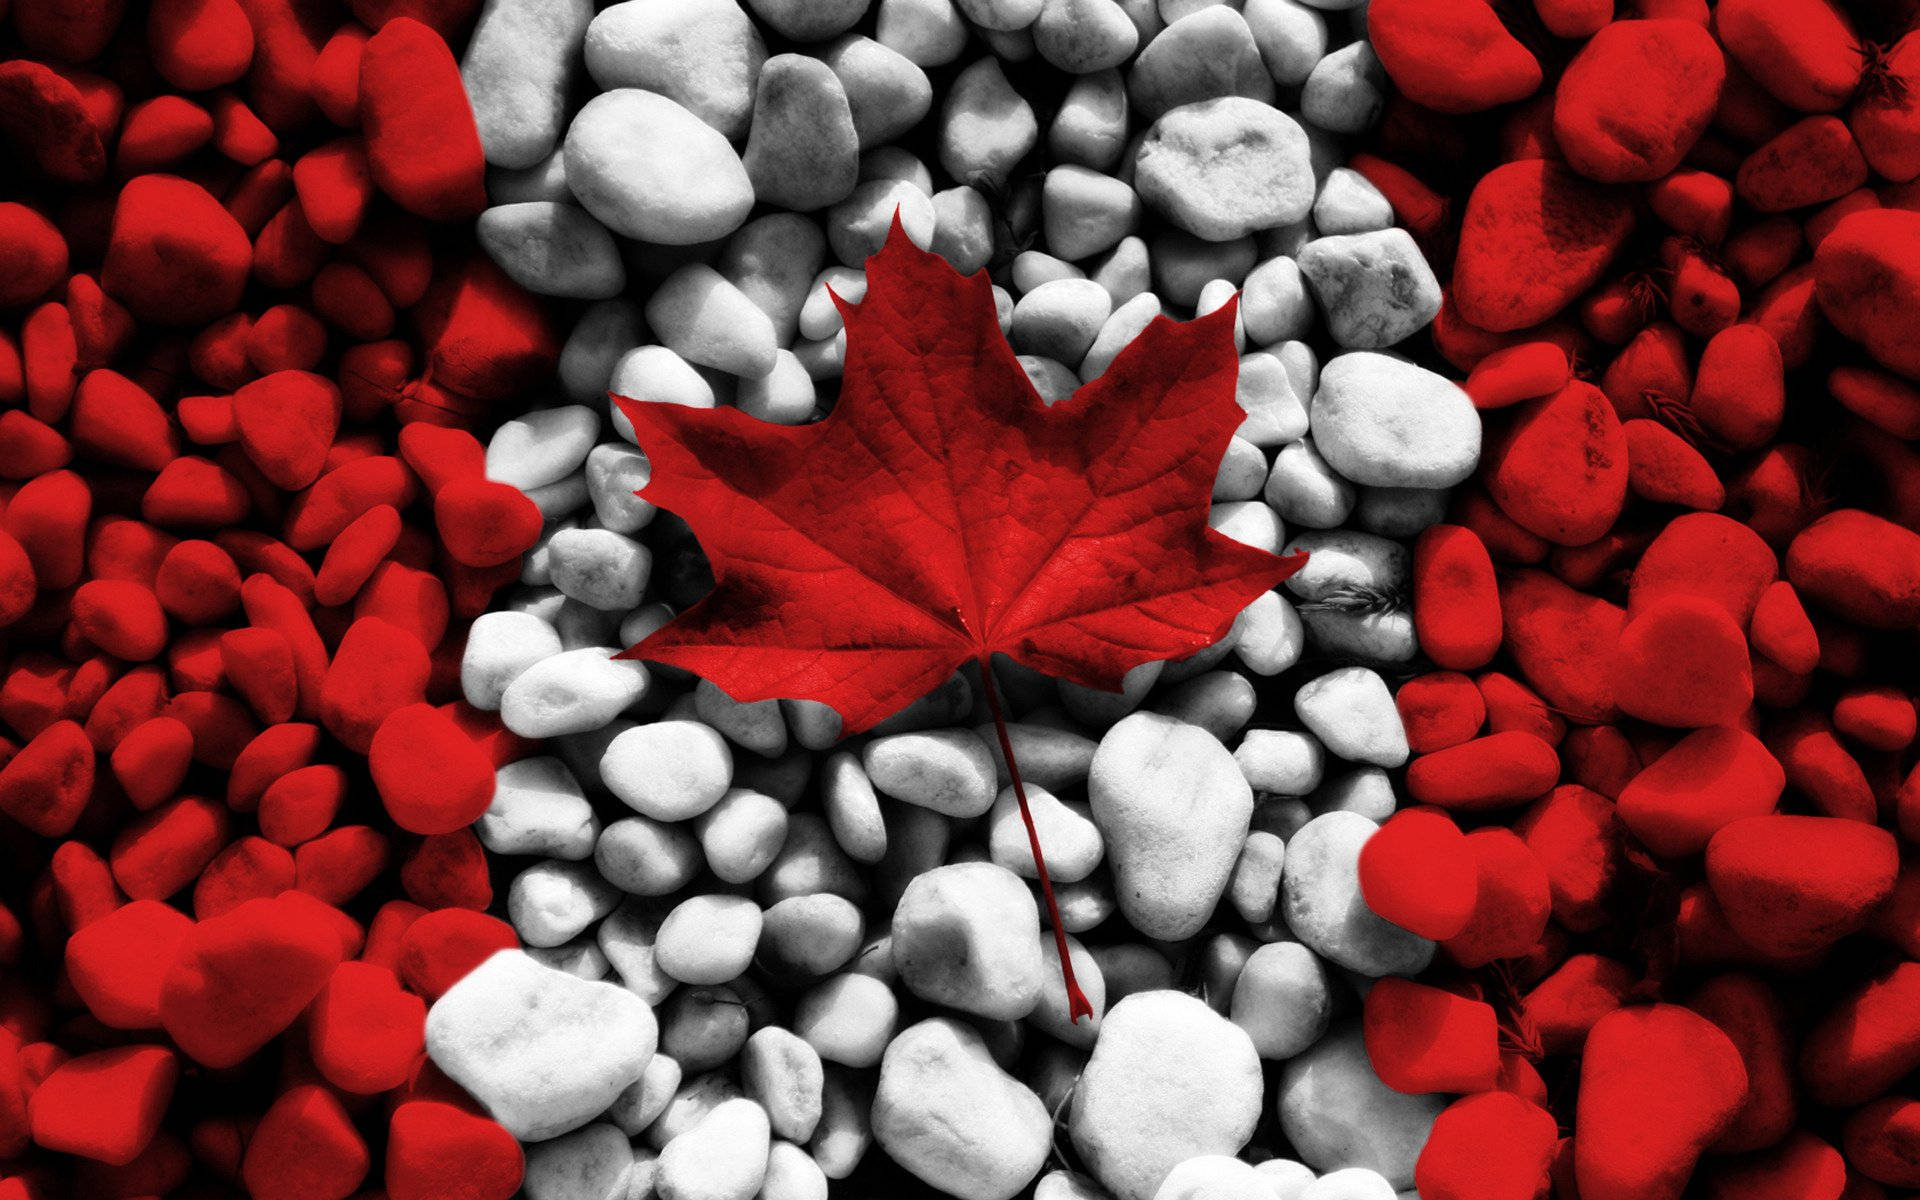 Canada Flag Maple Leaf